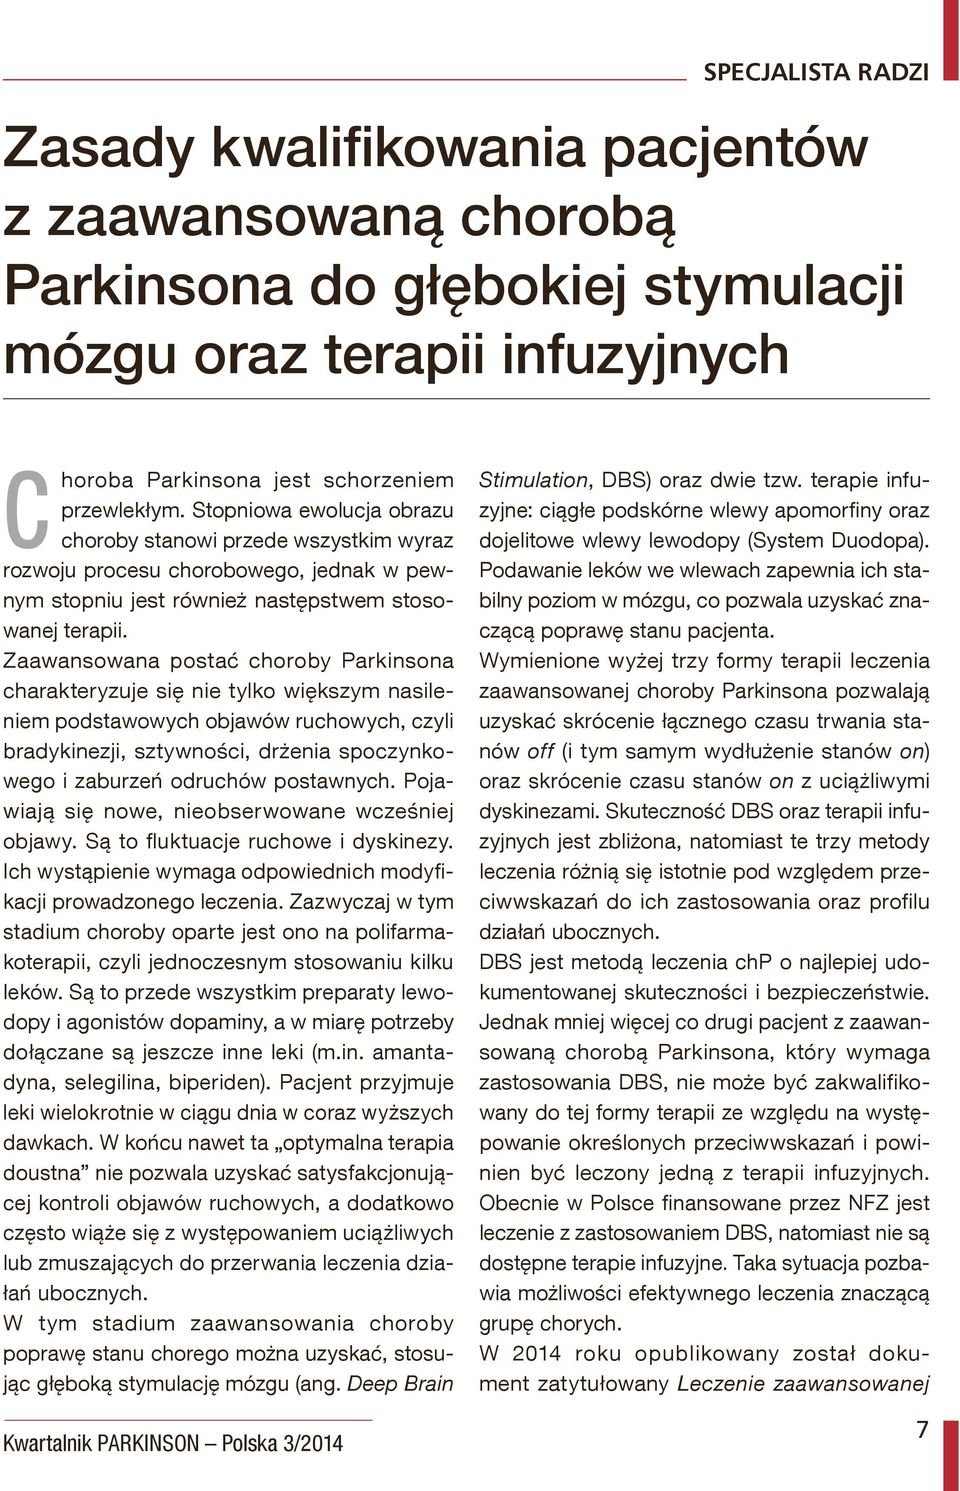 Zaawansowana postać choroby Parkinsona charakteryzuje się nie tylko większym nasileniem podstawowych objawów ruchowych, czyli bradykinezji, sztywności, drżenia spoczynkowego i zaburzeń odruchów